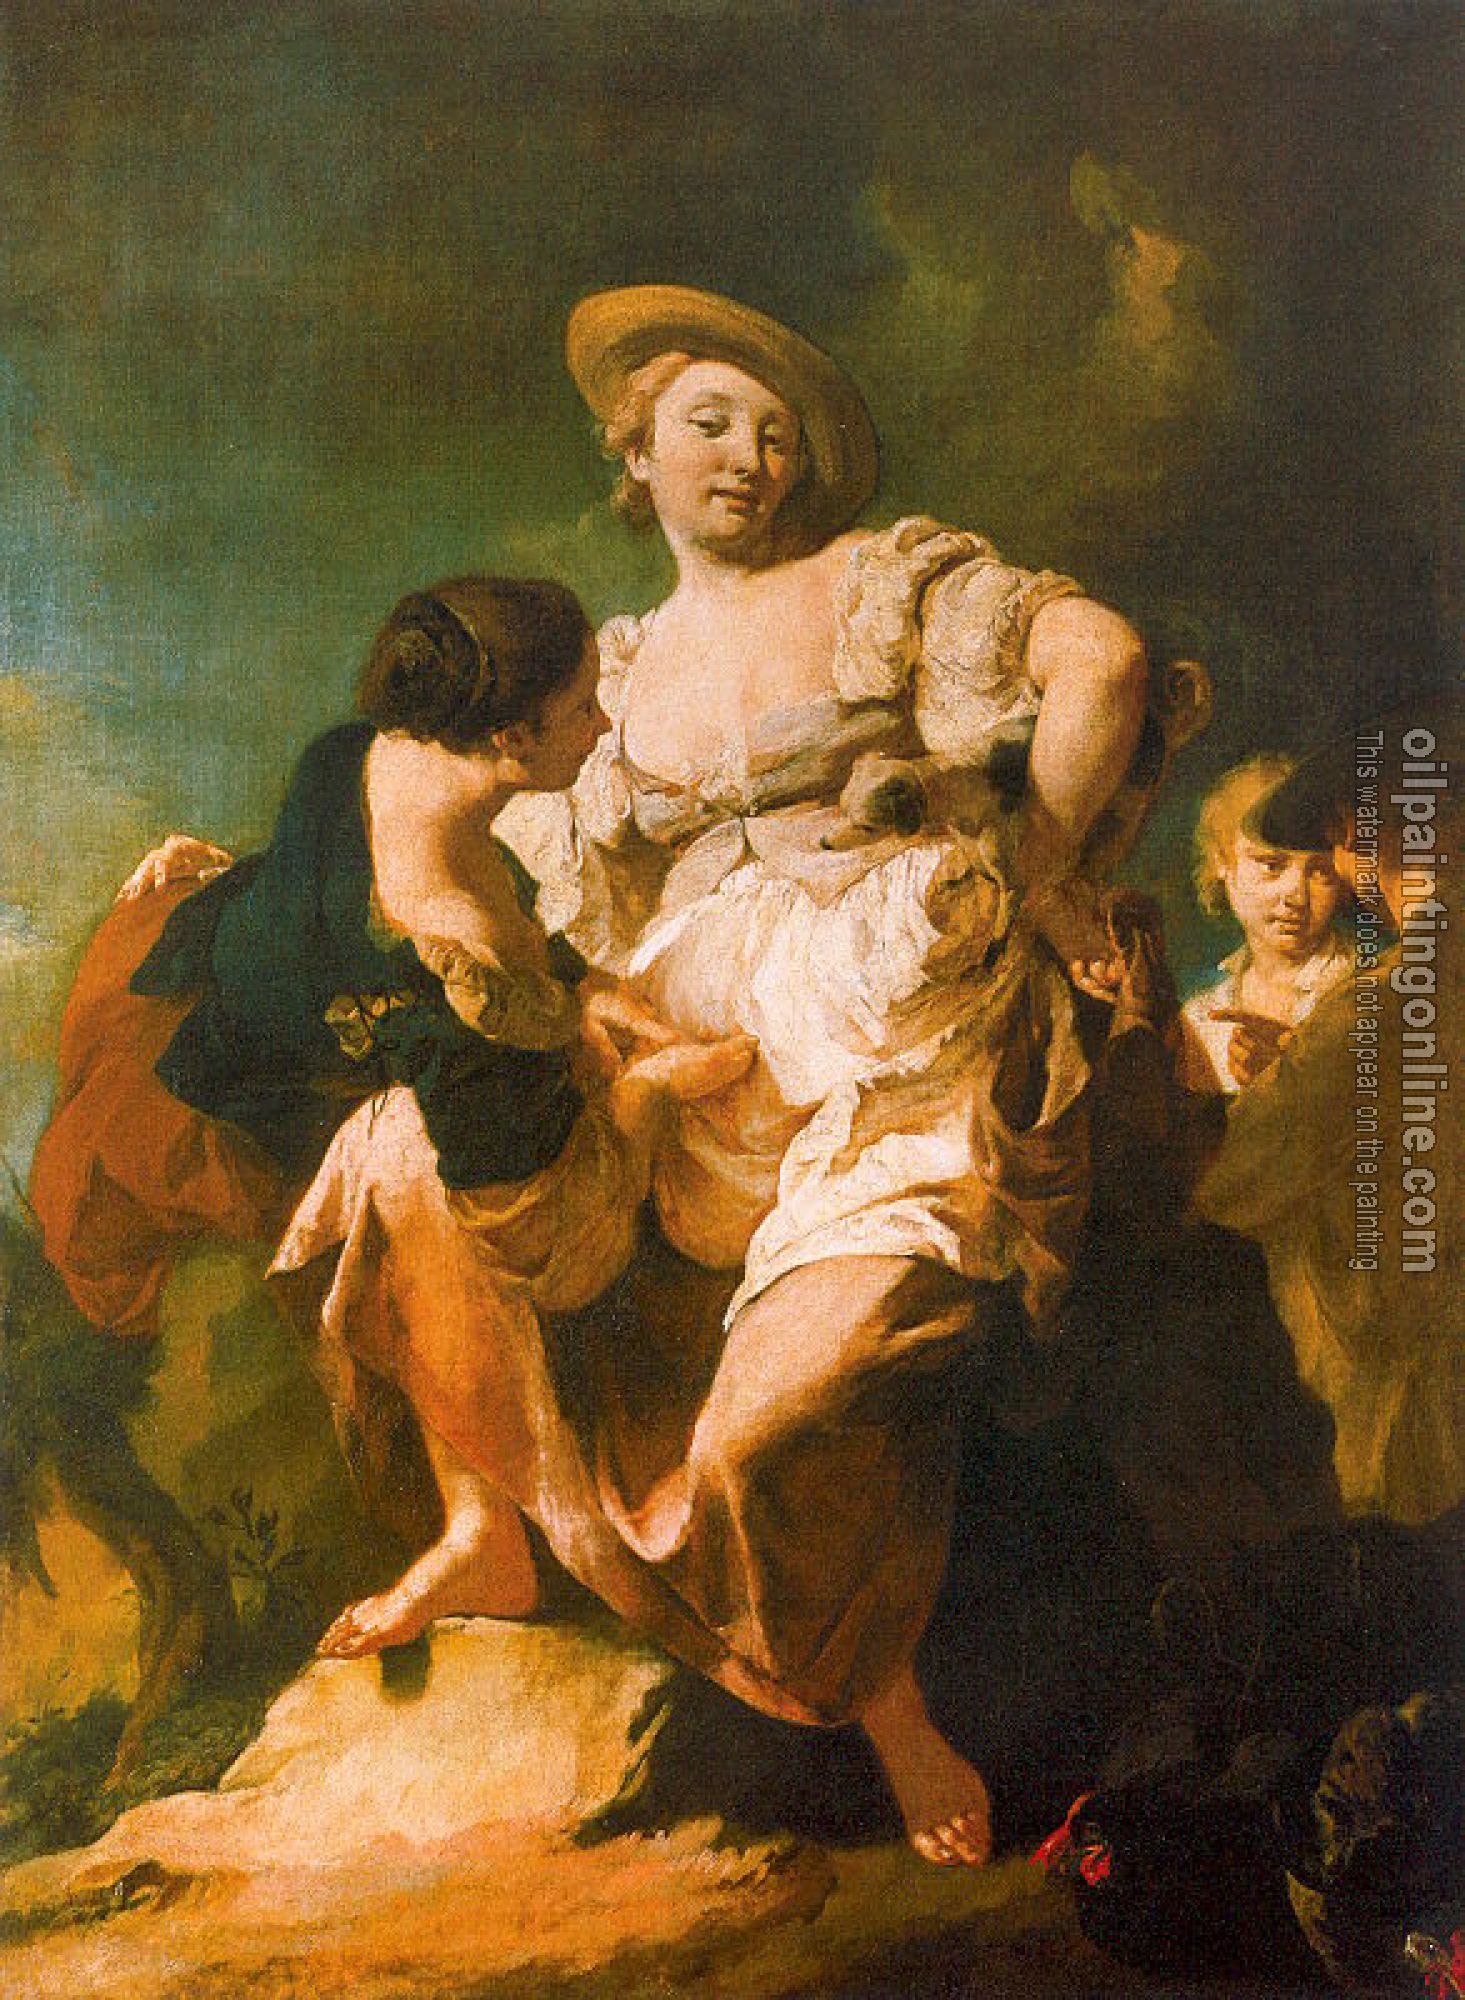 Piazzetta, Giovanni Battista - The Fortune Teller